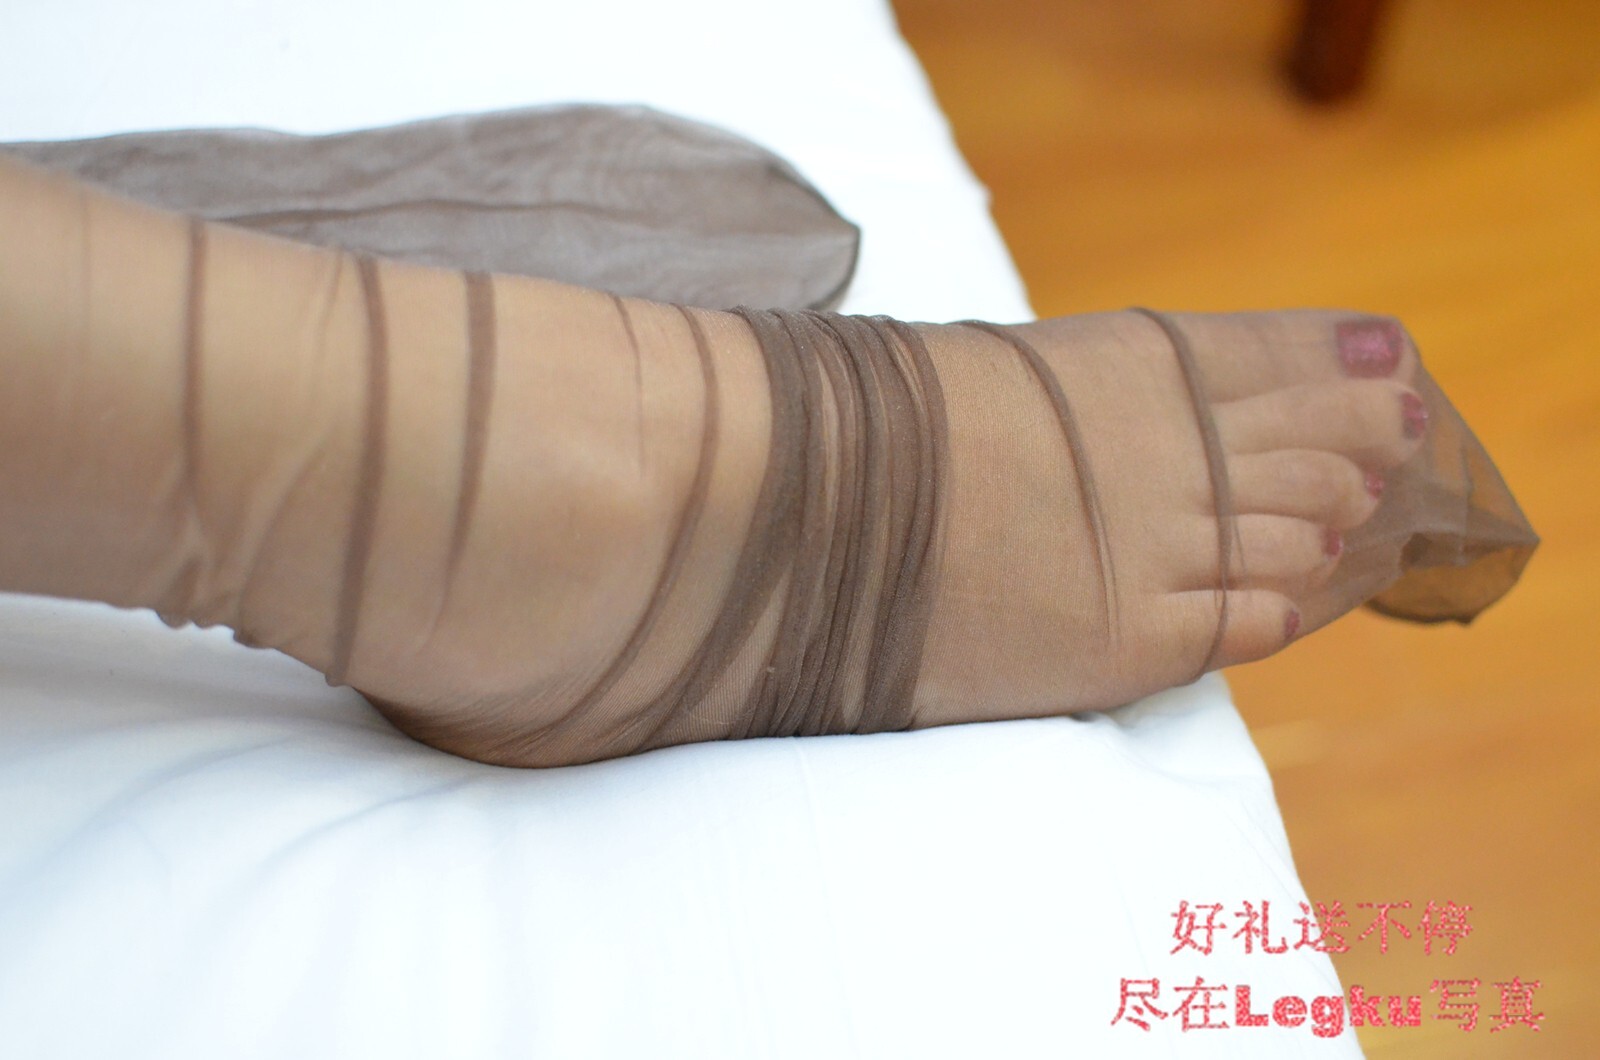 [legku original] No.114 original silk stockings photo